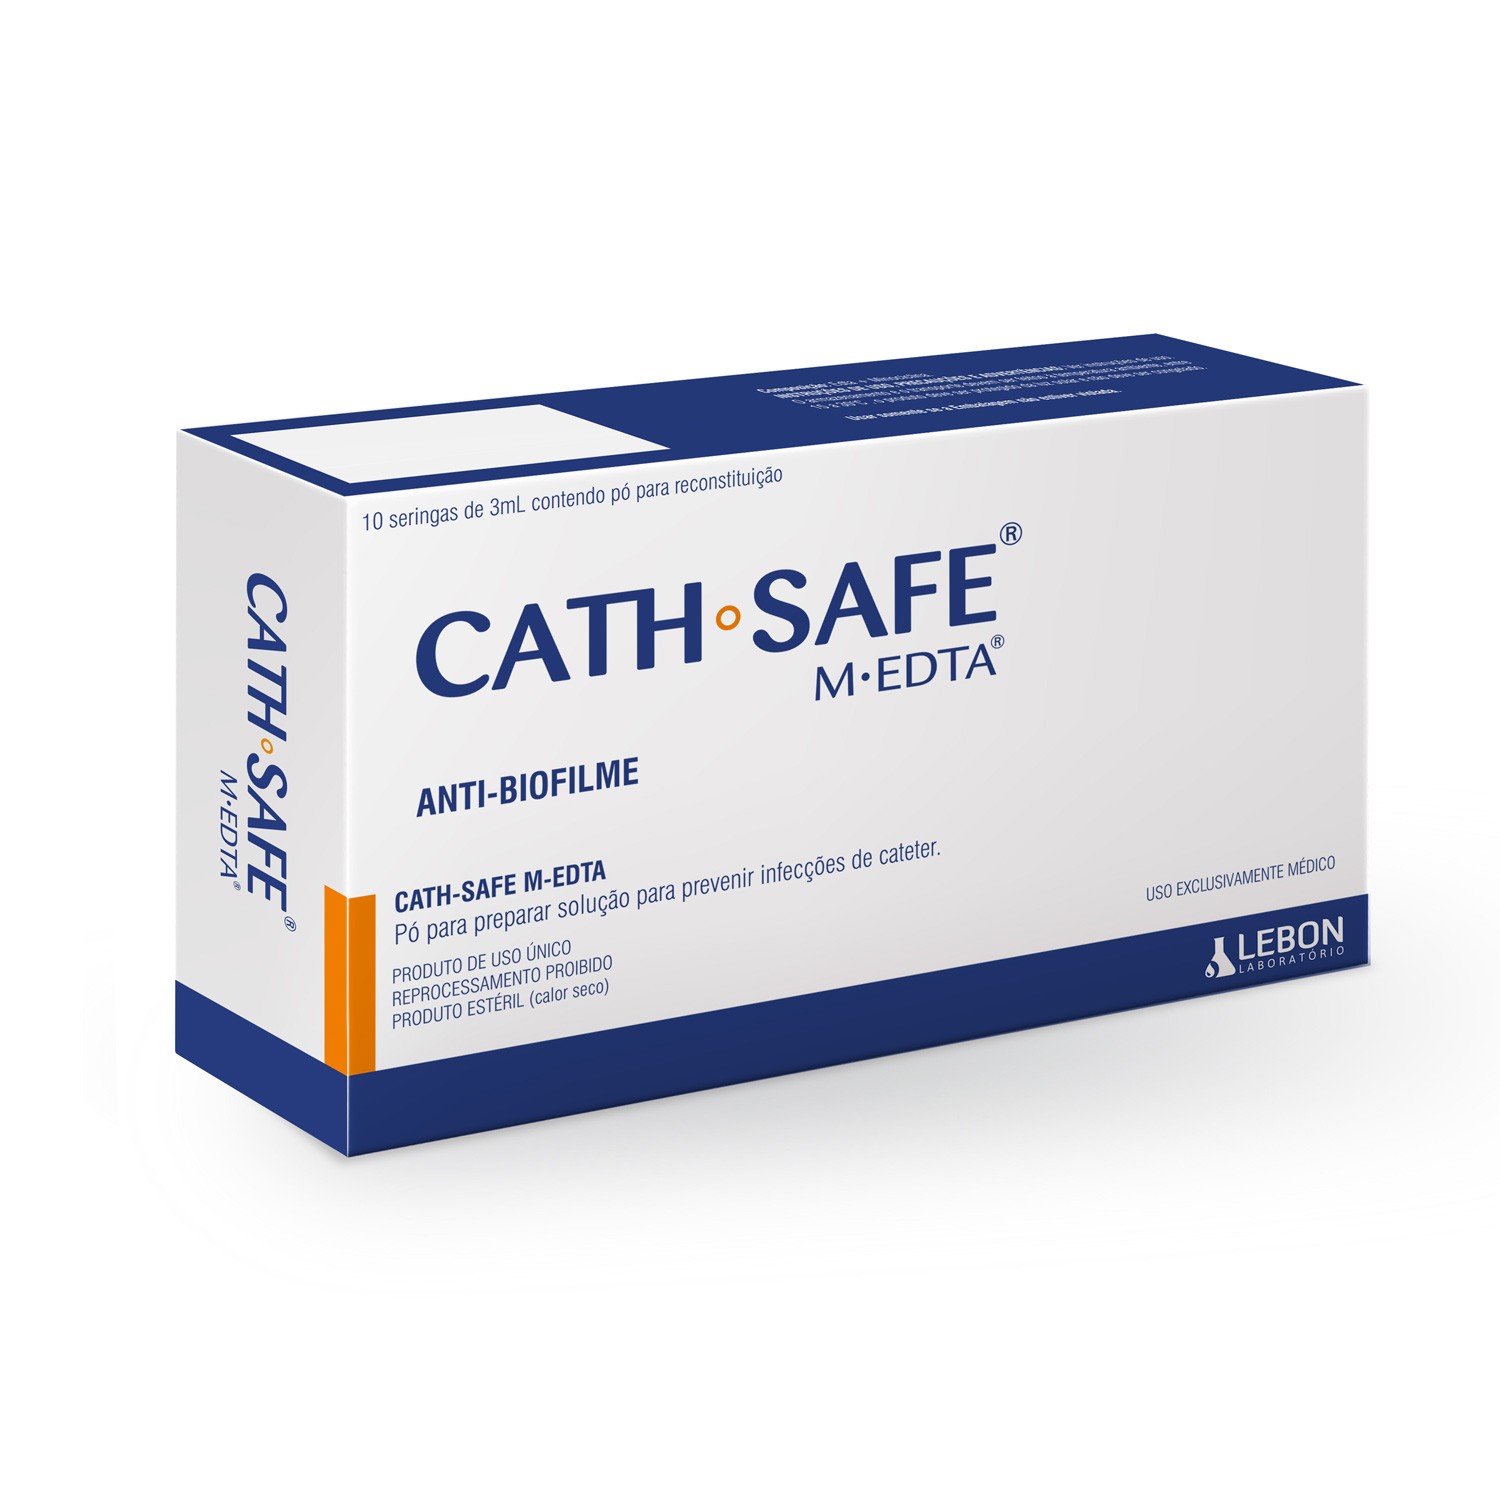 CATH-SAFE® M-EDTA  Prevenção de infecções em cateter e anti-biofilme [Caixa com 10 seringas]